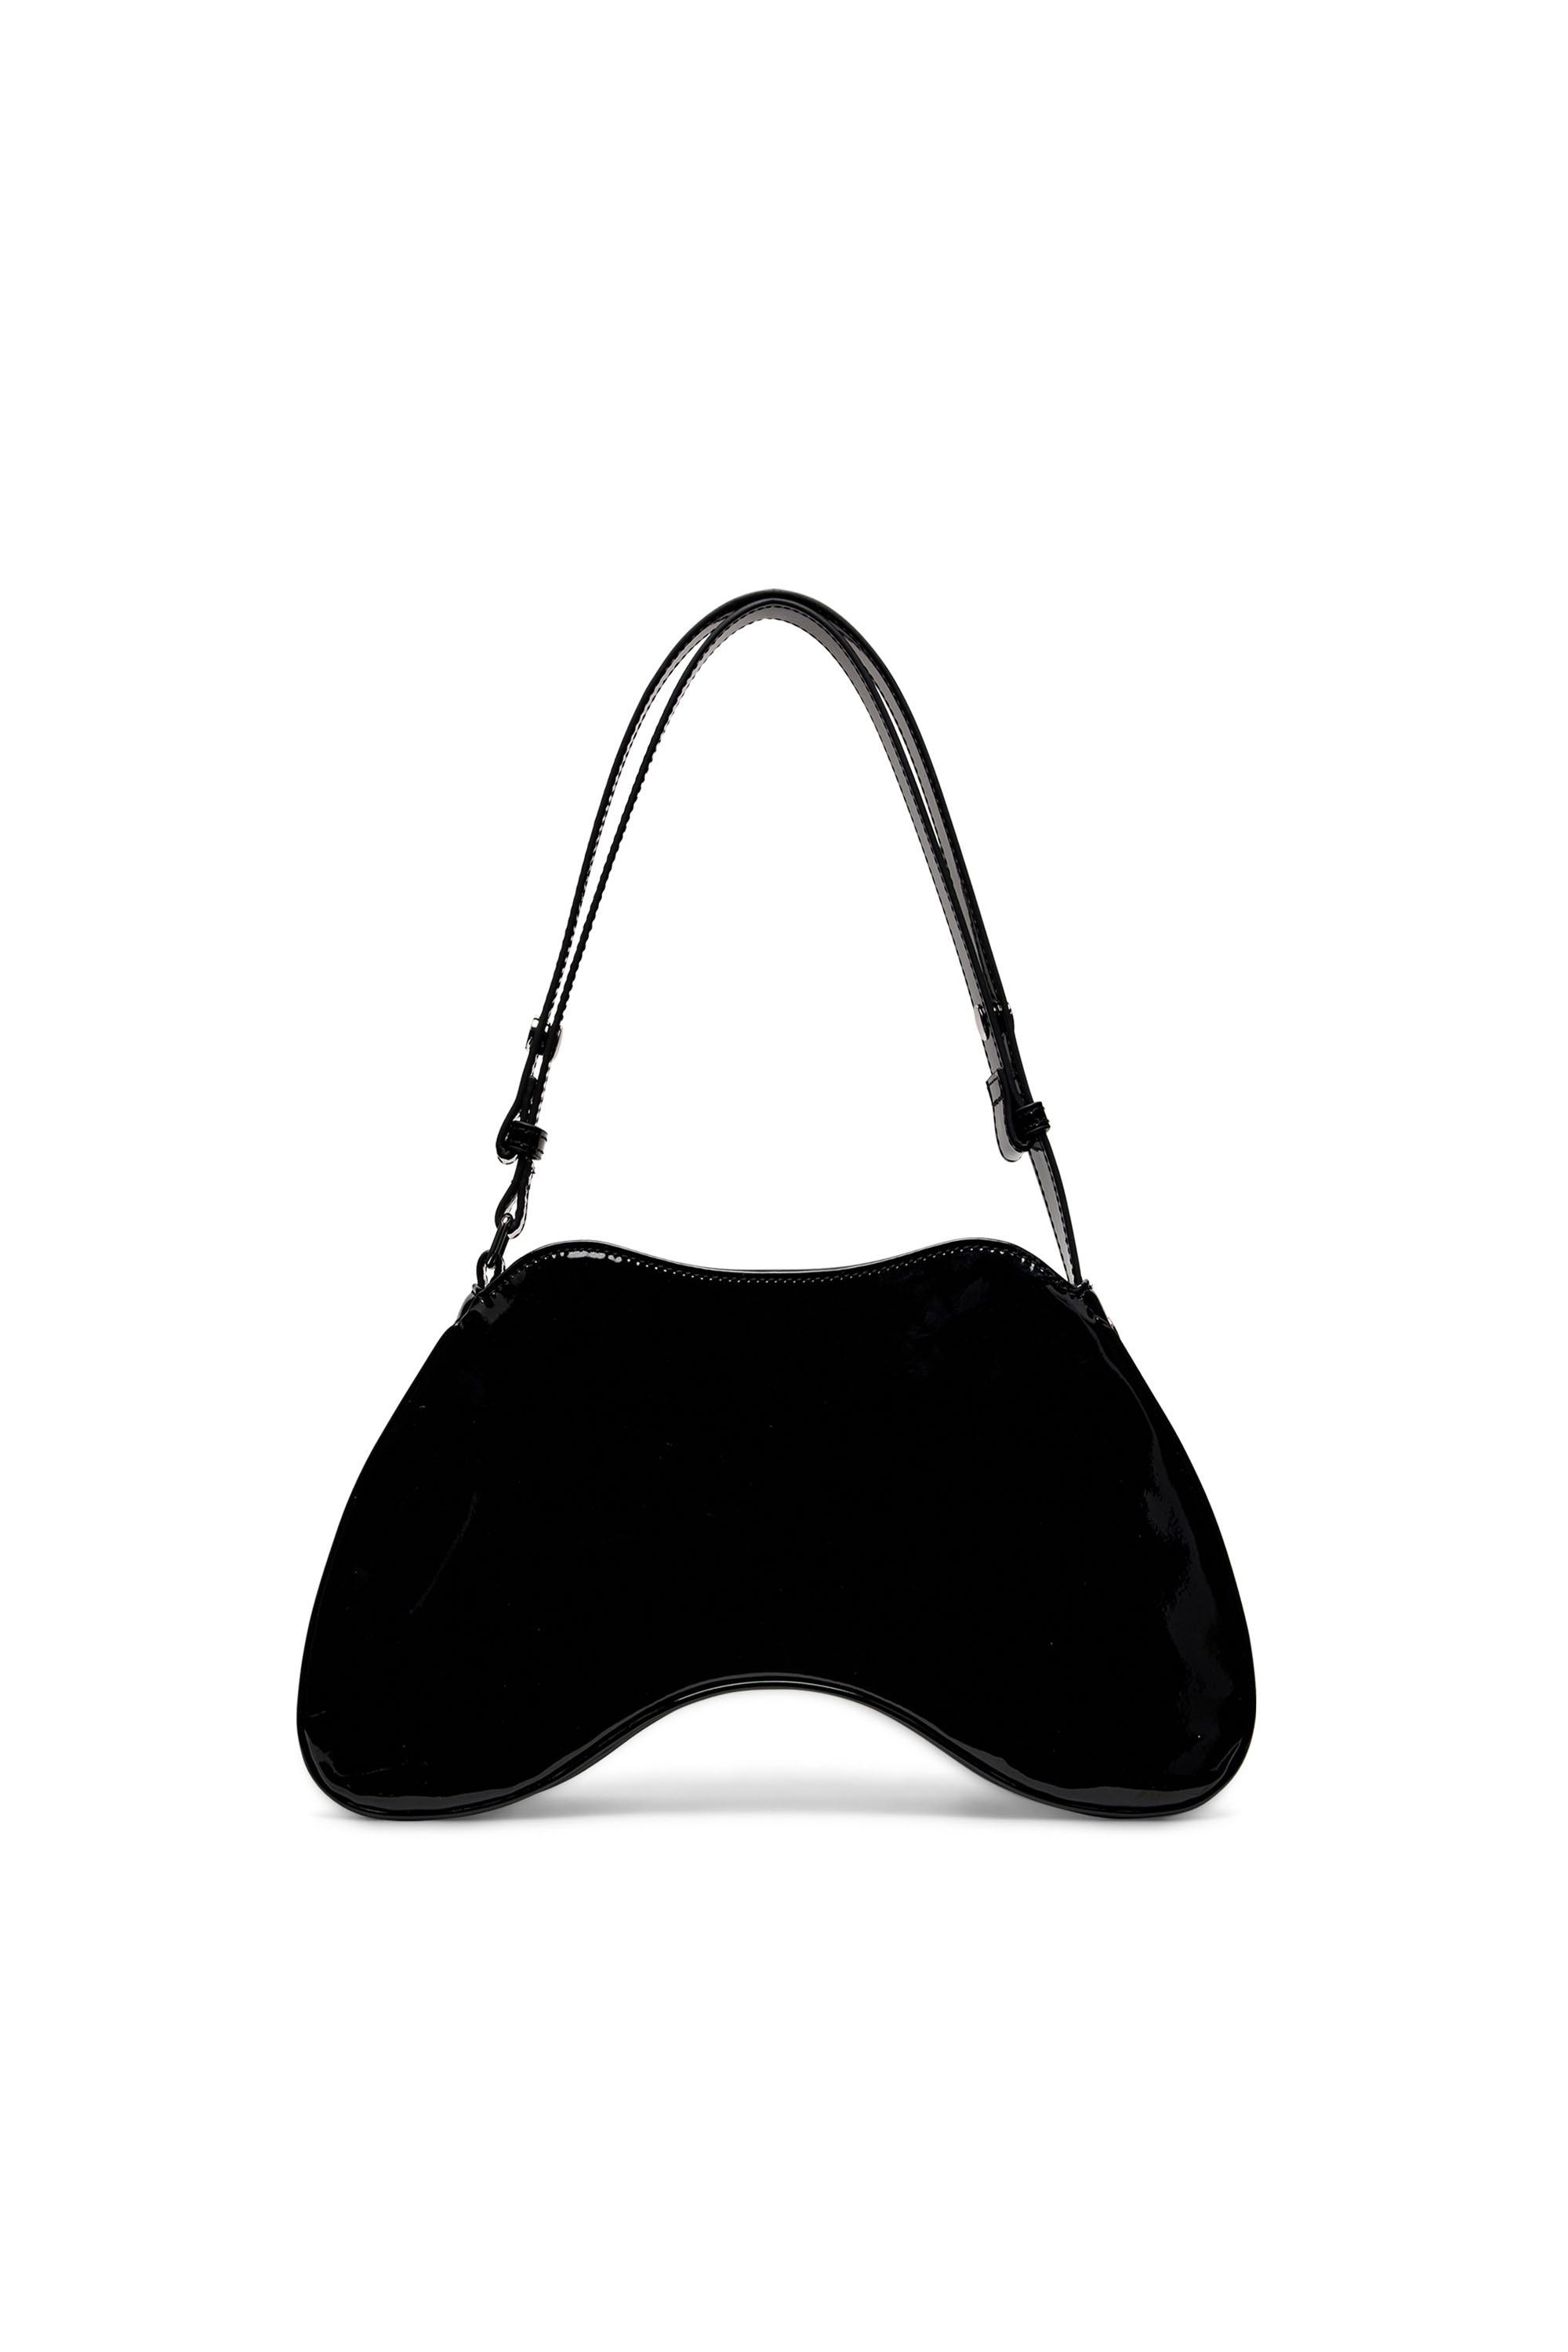 Diesel - PLAY SHOULDER, Woman Play-Glossy shoulder bag in Black - Image 2